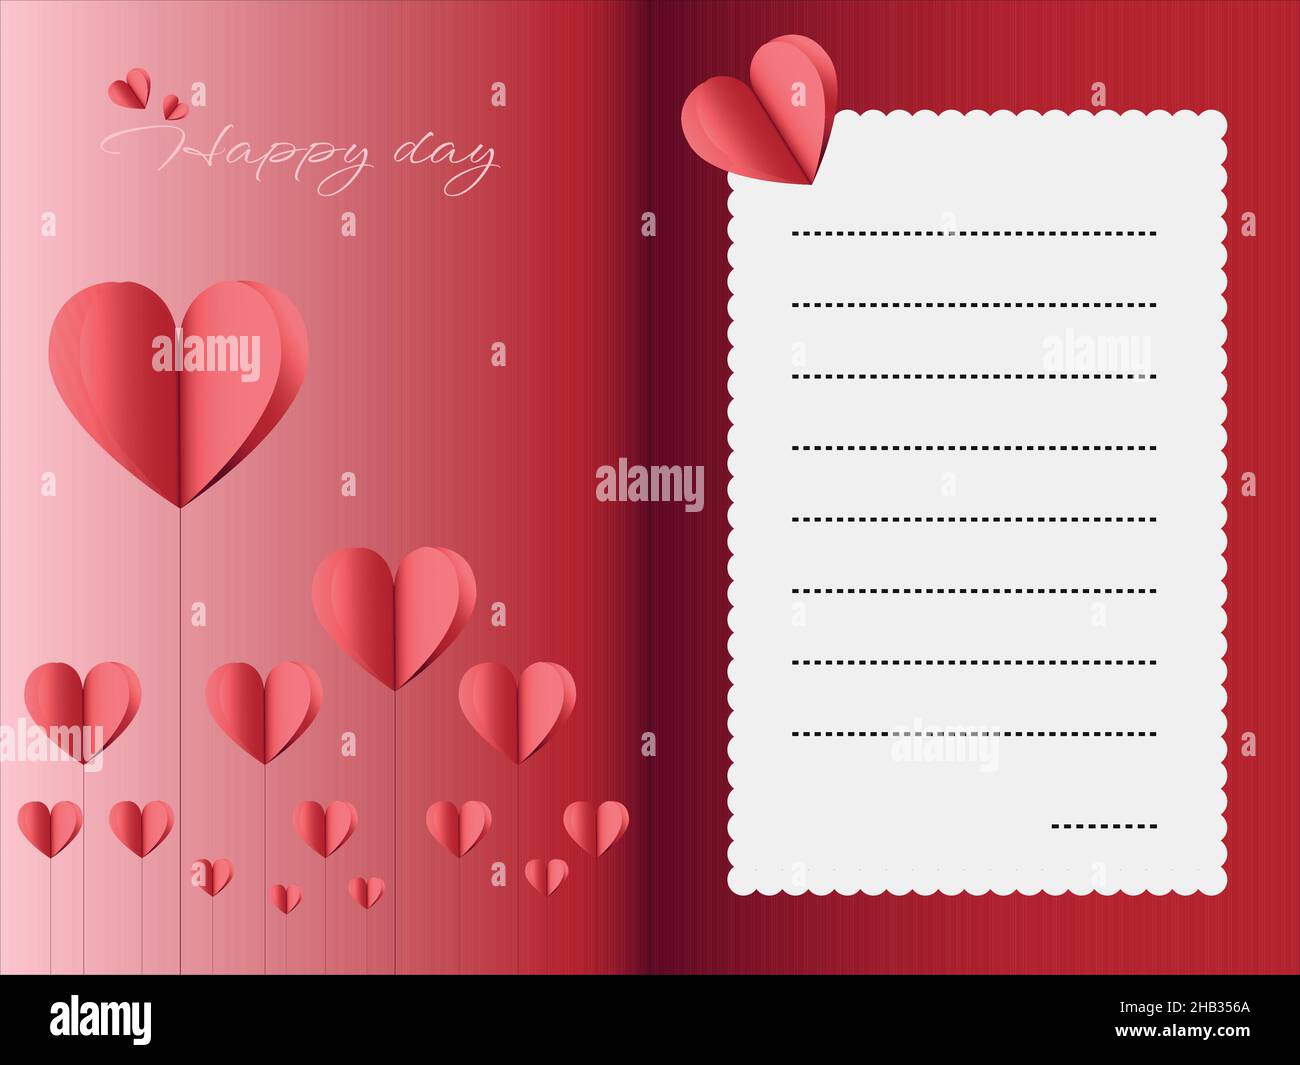 Lettre d'amour avec coeurs en papier découpé pour la Saint-Valentin ou la fête des mères.Modèle pour écrire une belle lettre ou un message Illustration de Vecteur